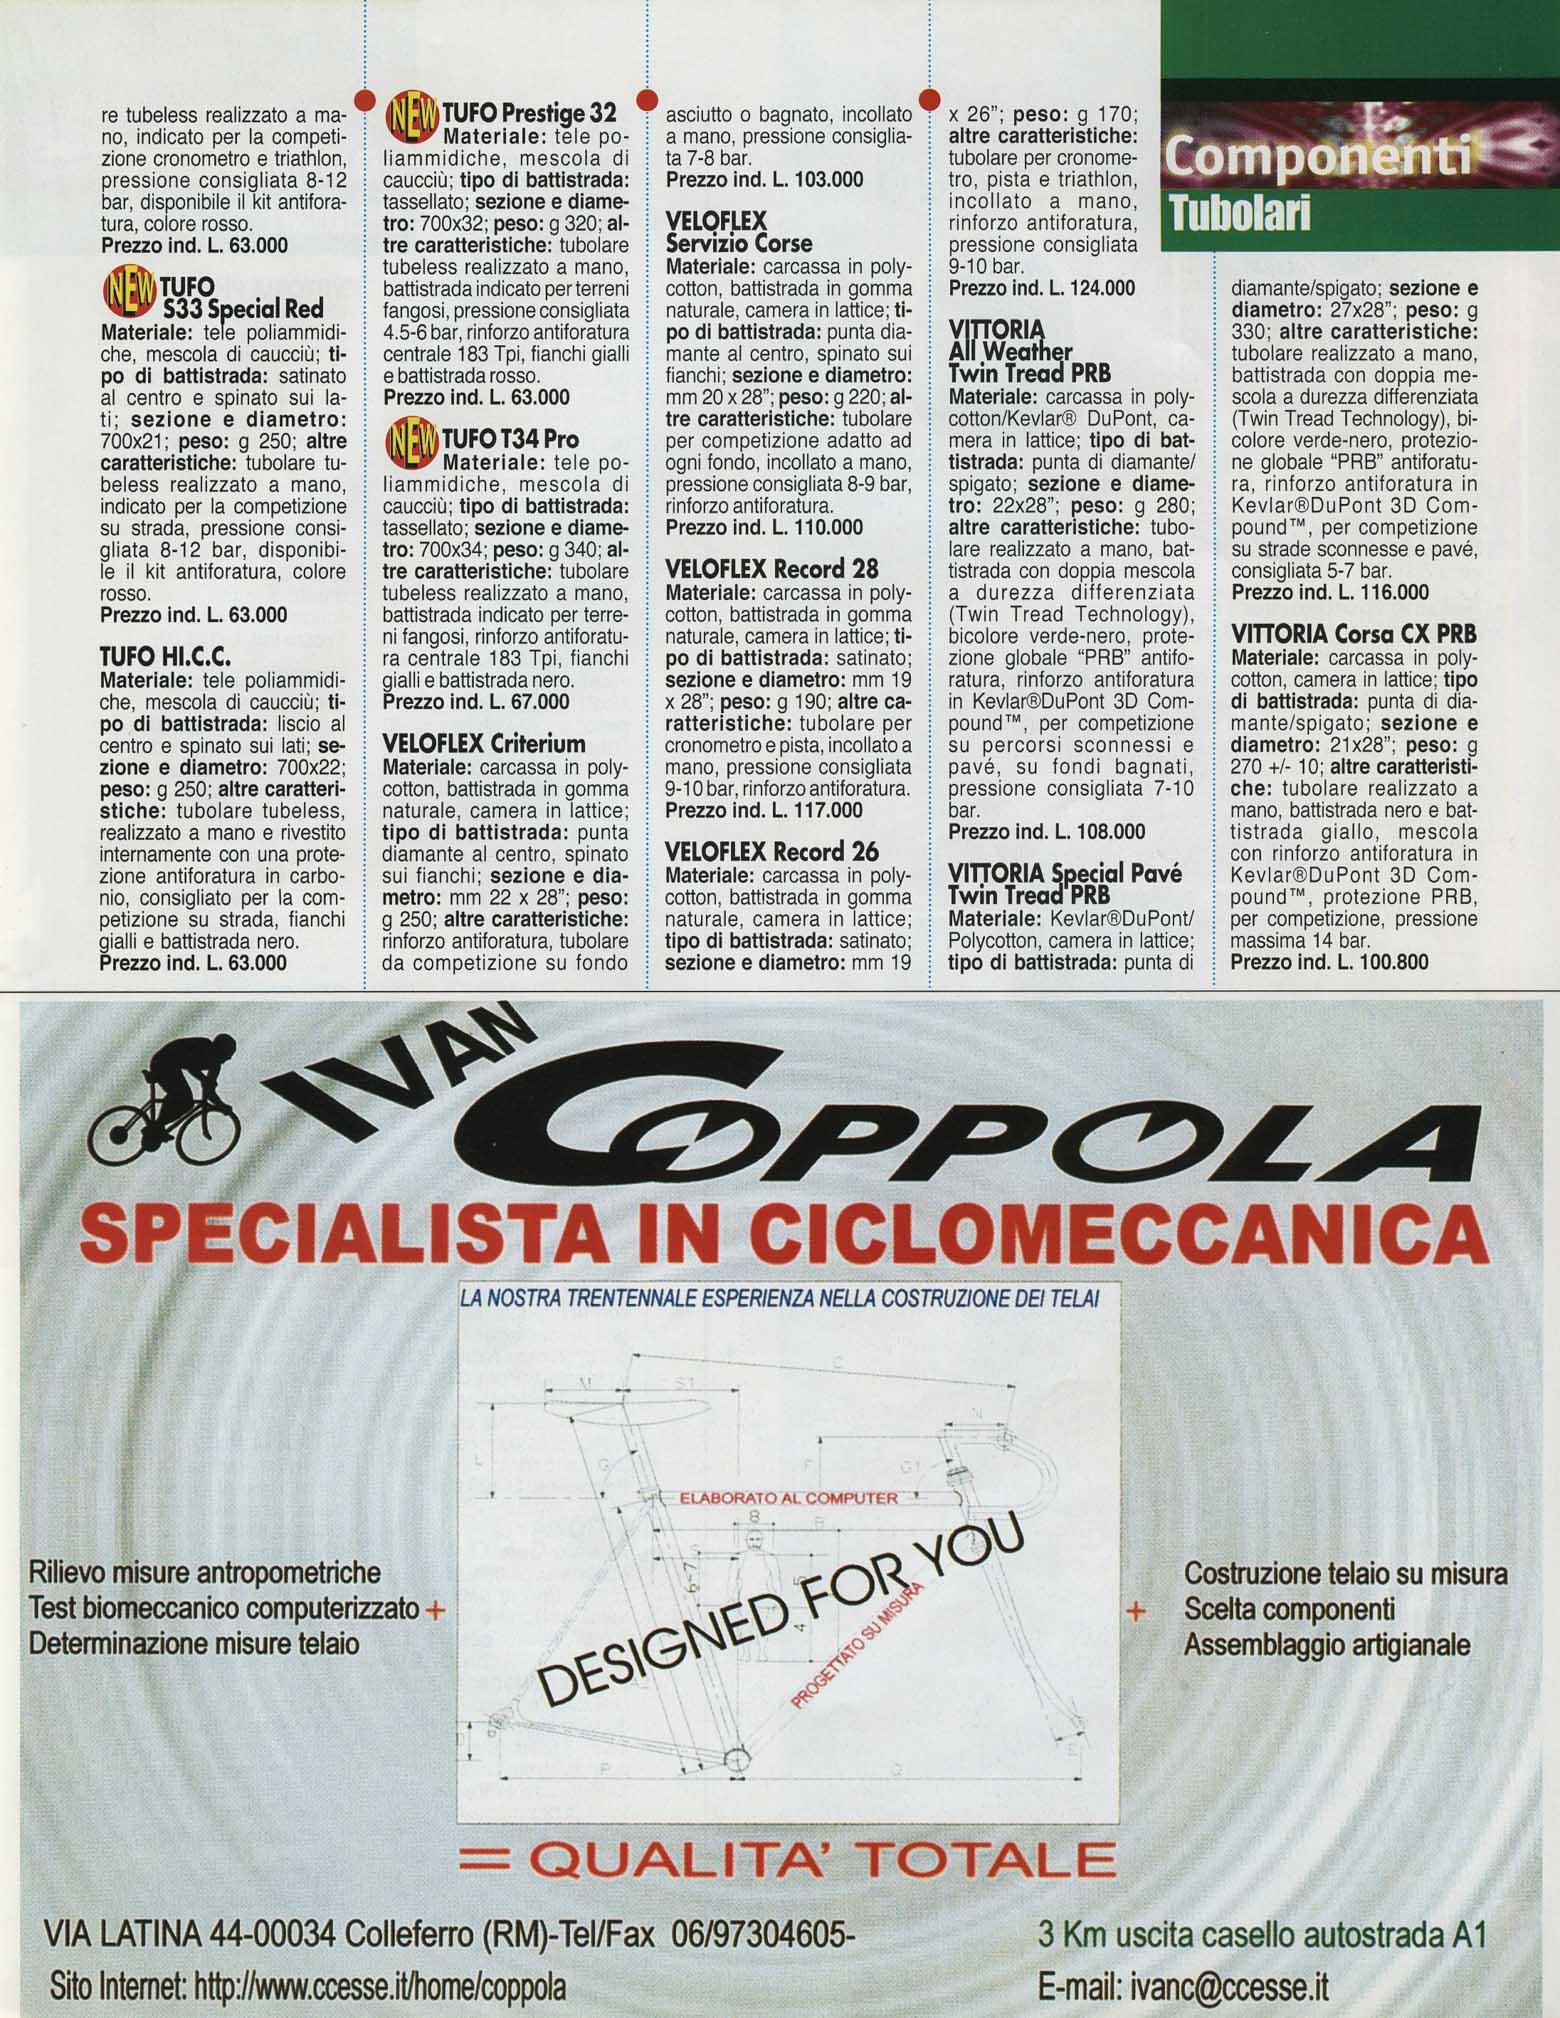 La Bicicletta Guida 99 - Componenti scan 54 main image